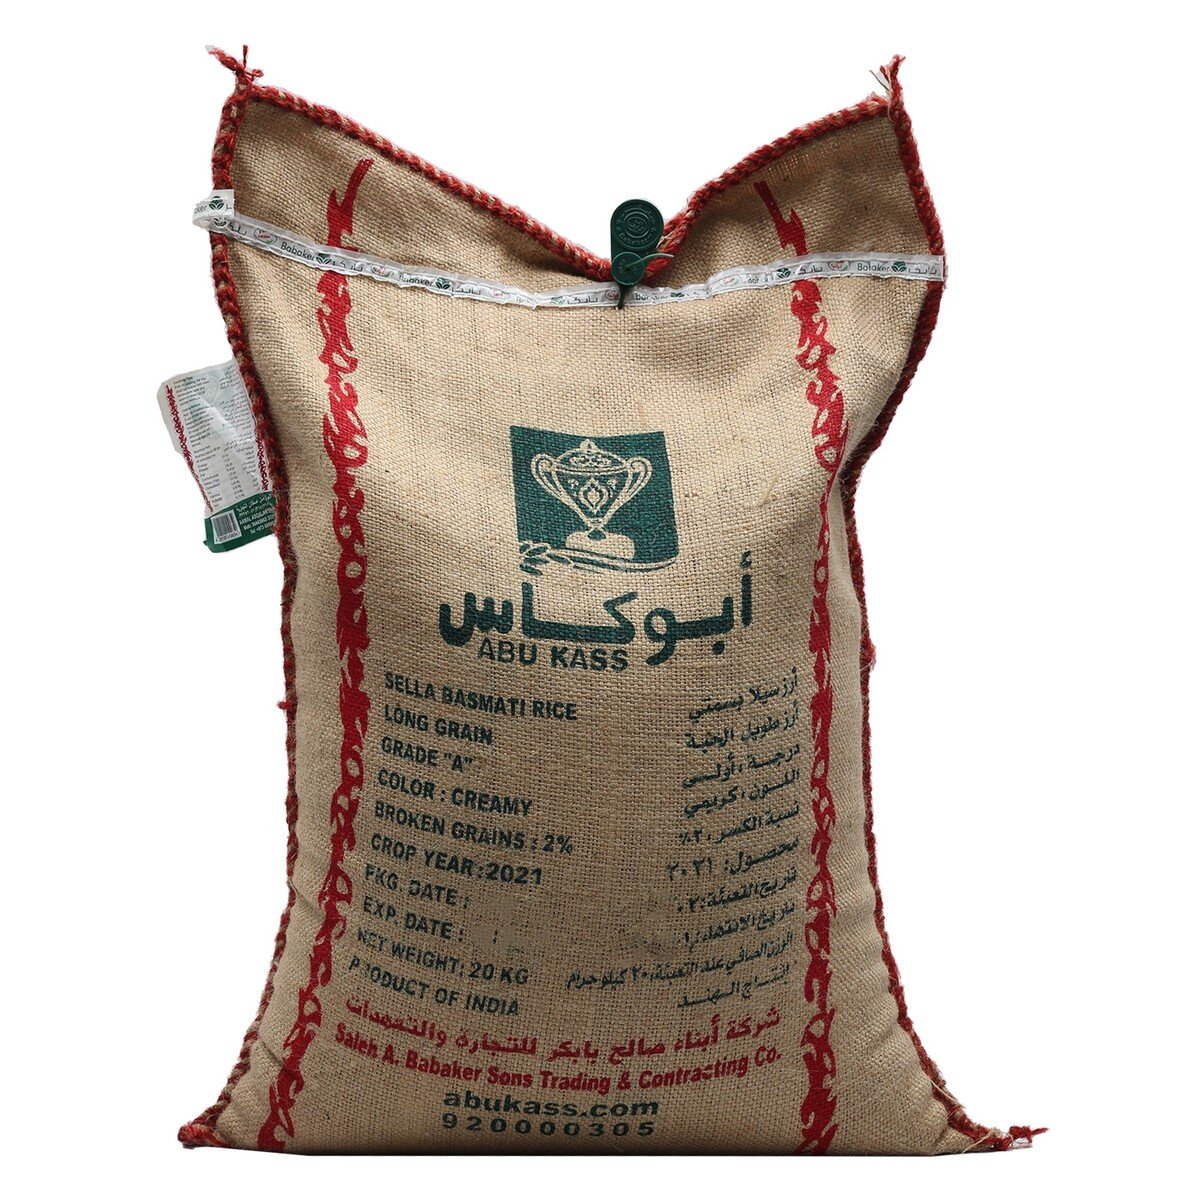 Abukass Babakar Basmati Rice 20 kg